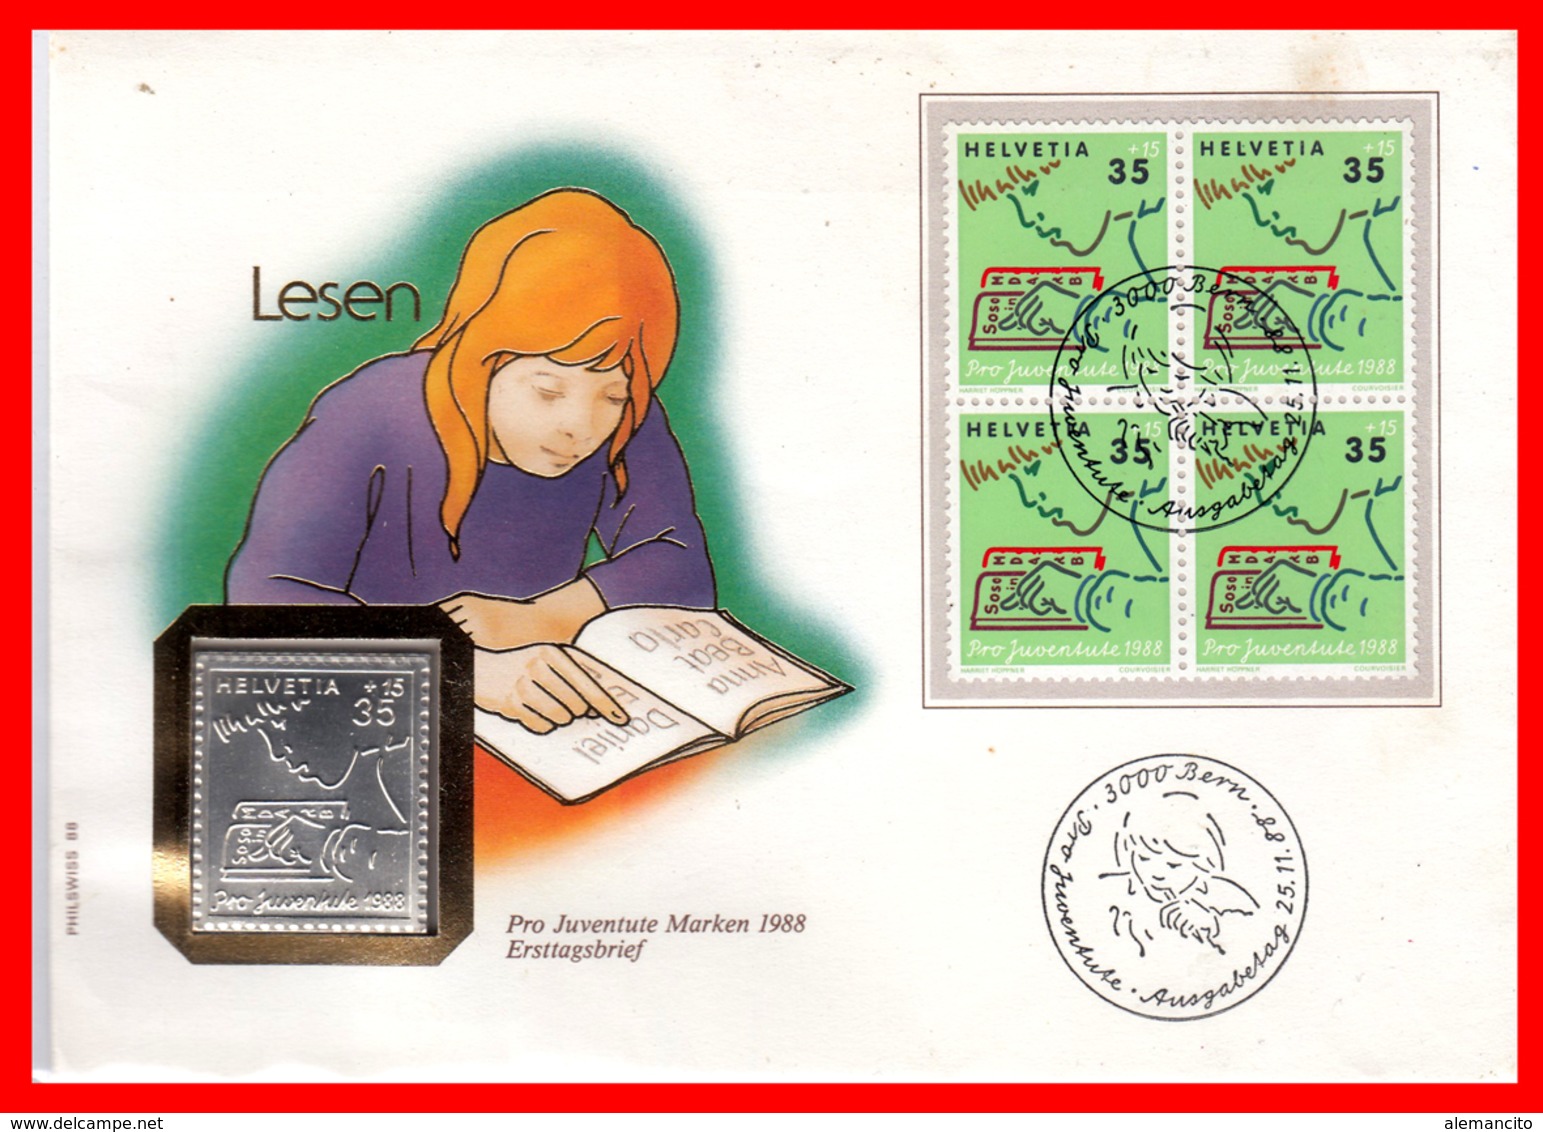 HELVETIA  ( SUIZA )  PRO JUVENTUTE - LINGOTE DEPLATA CON BLOQUE DE 4 SELLOS AÑO 1988 - Unused Stamps